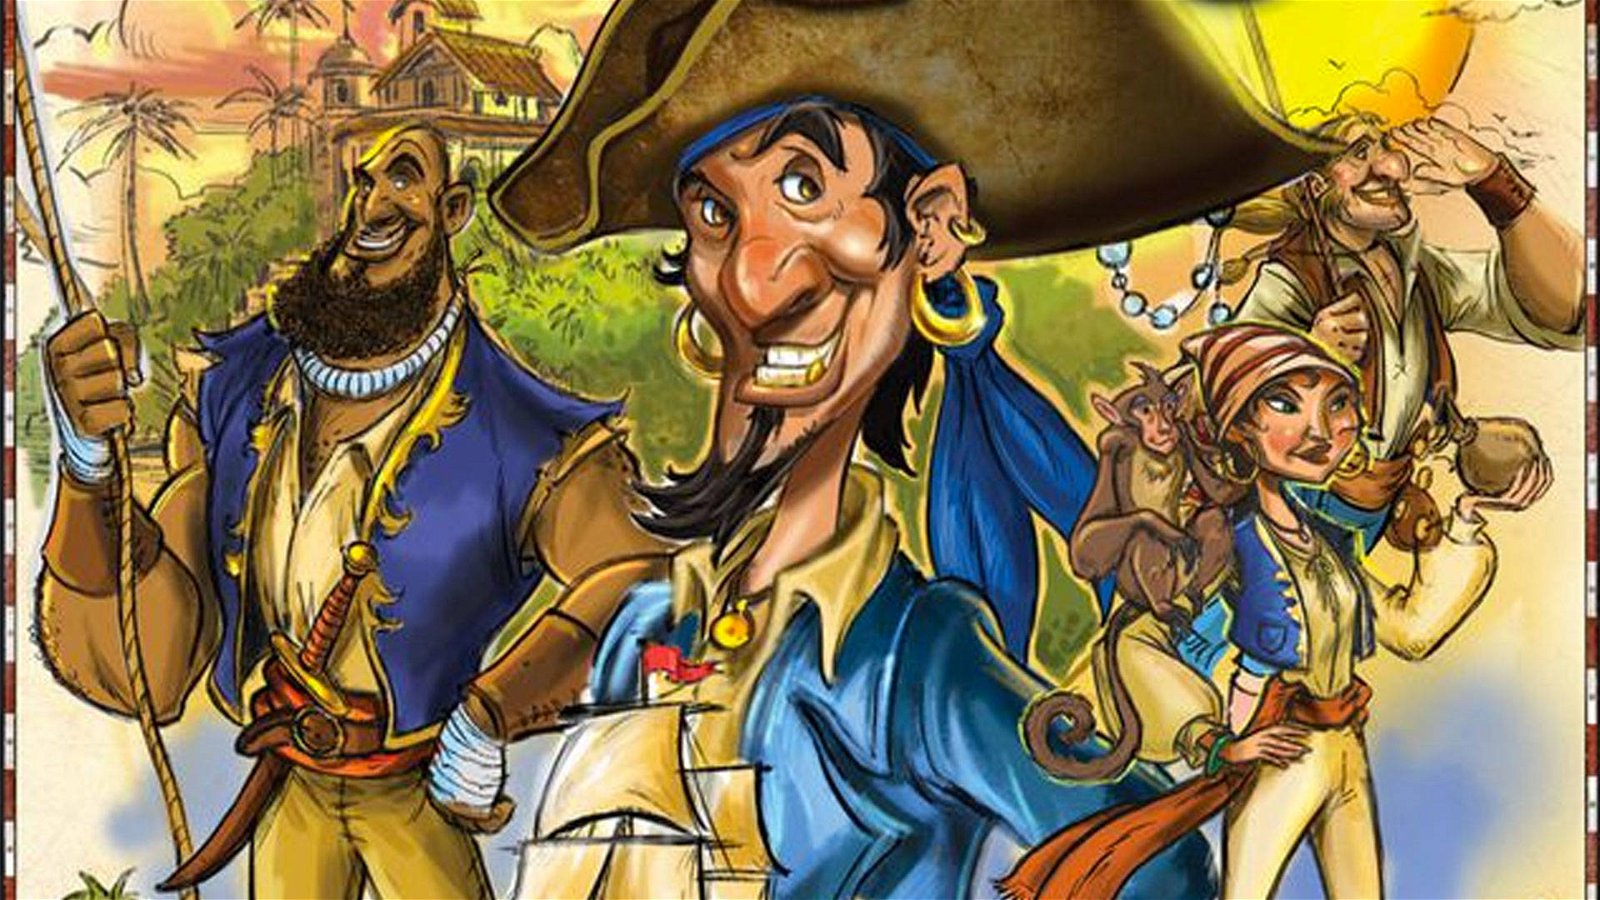 Immagine di Extraordinary Adventures: Pirates un deck building game per diventare Re dei Pirati